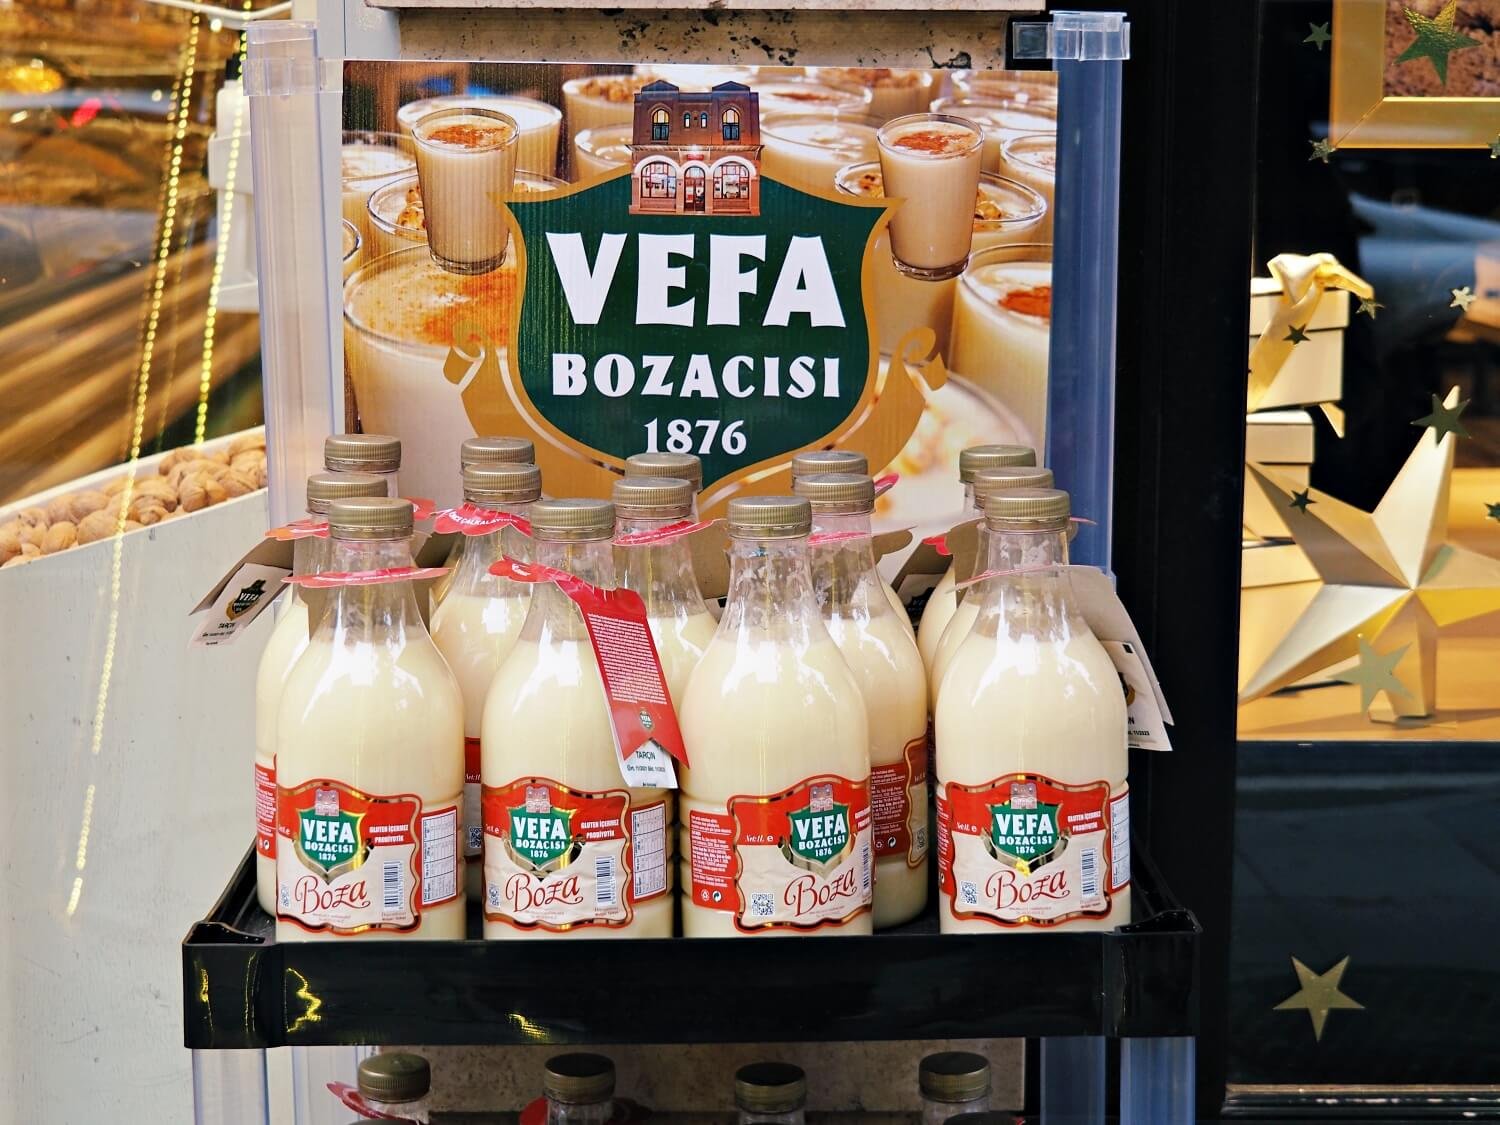 Bottles of Vefa Boza in Istanbul in winter